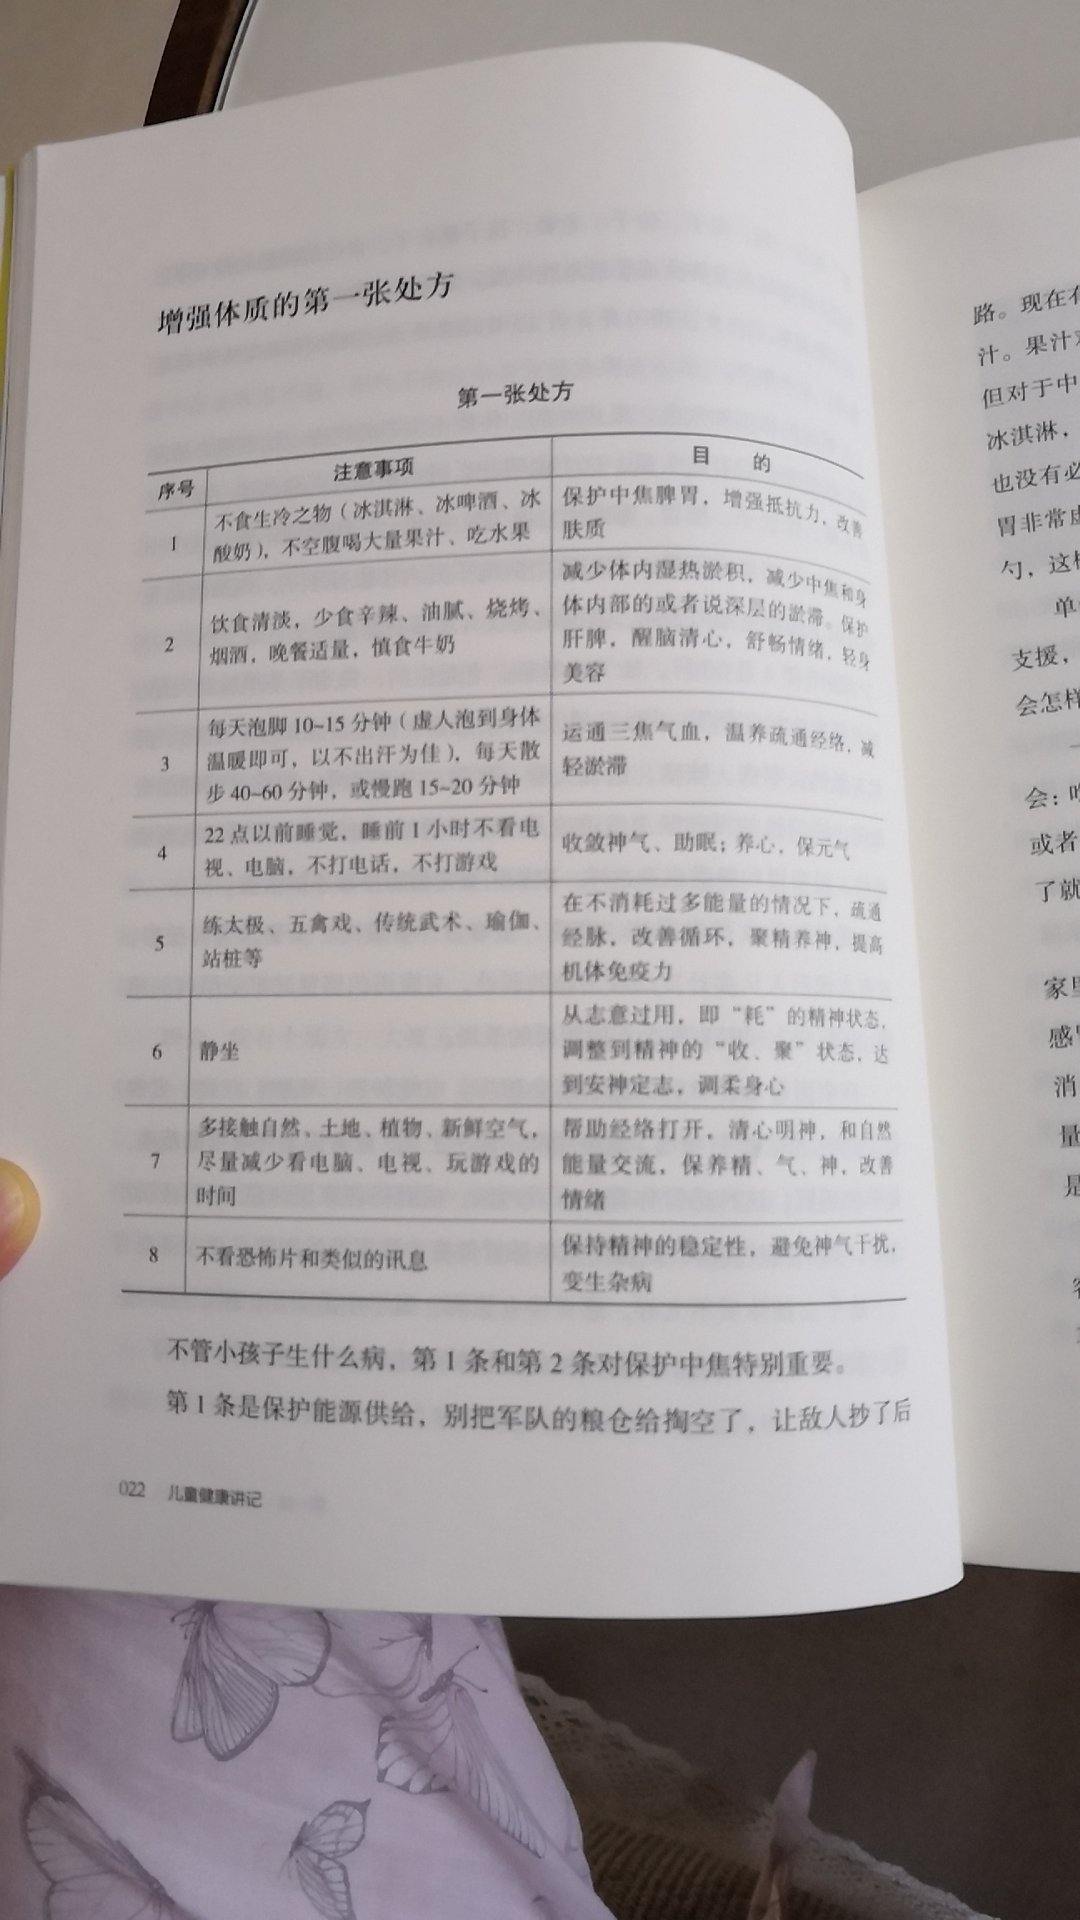 中医交流群里的老师推荐的书本。对于中医正养孩子的中医小白来说很好~内容讲解非常通俗生活化。书本的纸张和手感都很好。